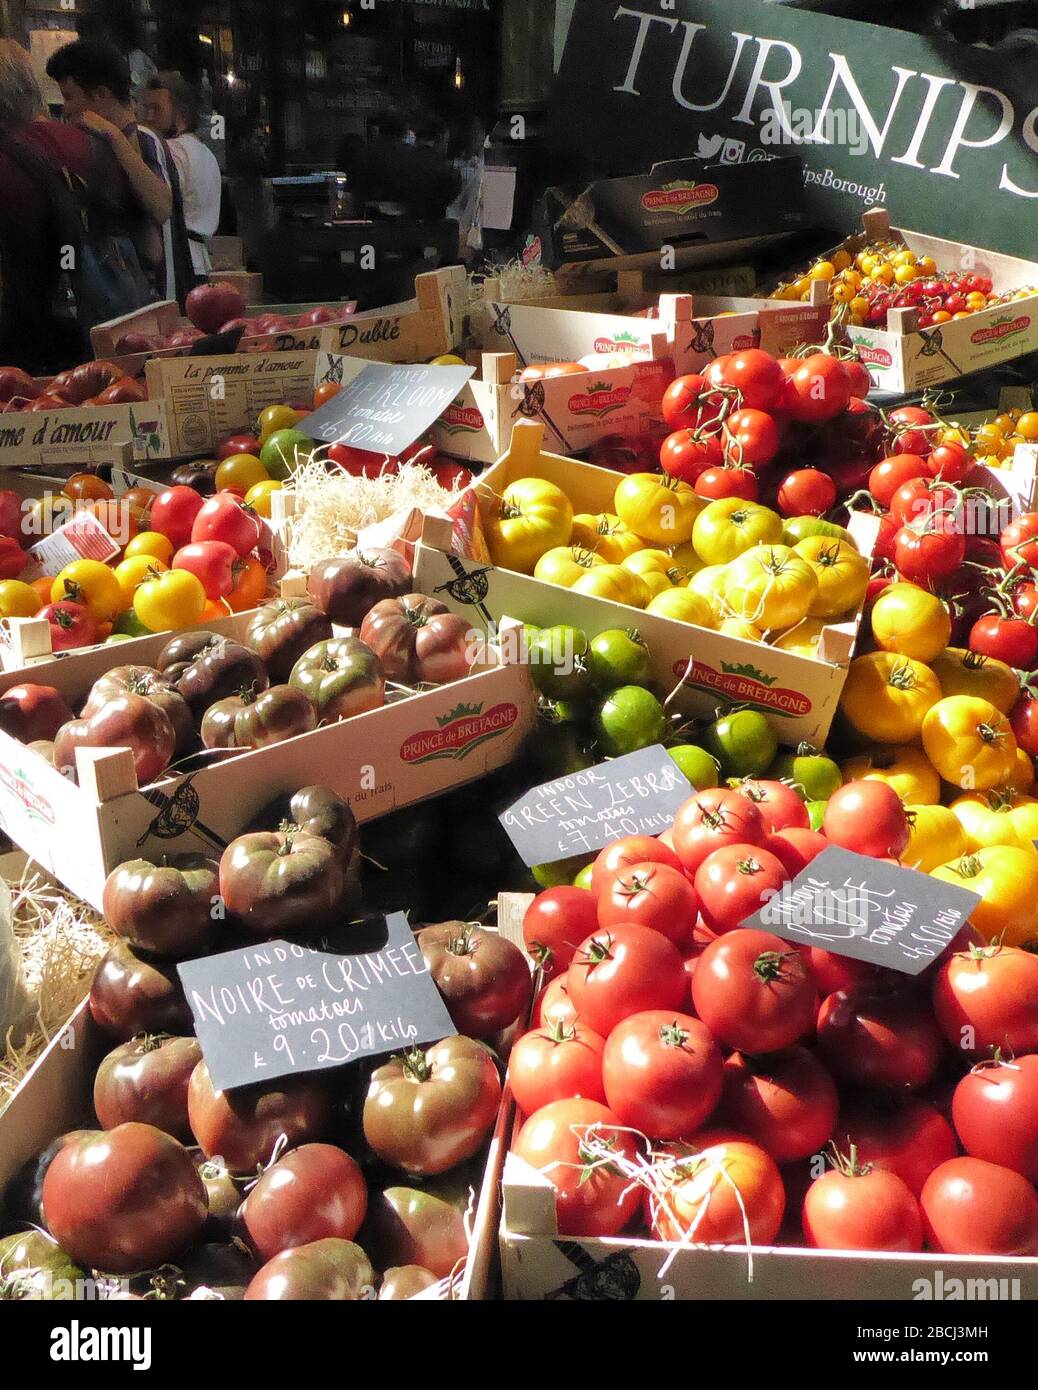 Fresh Produce at Turnips Borough Market Stock Photo